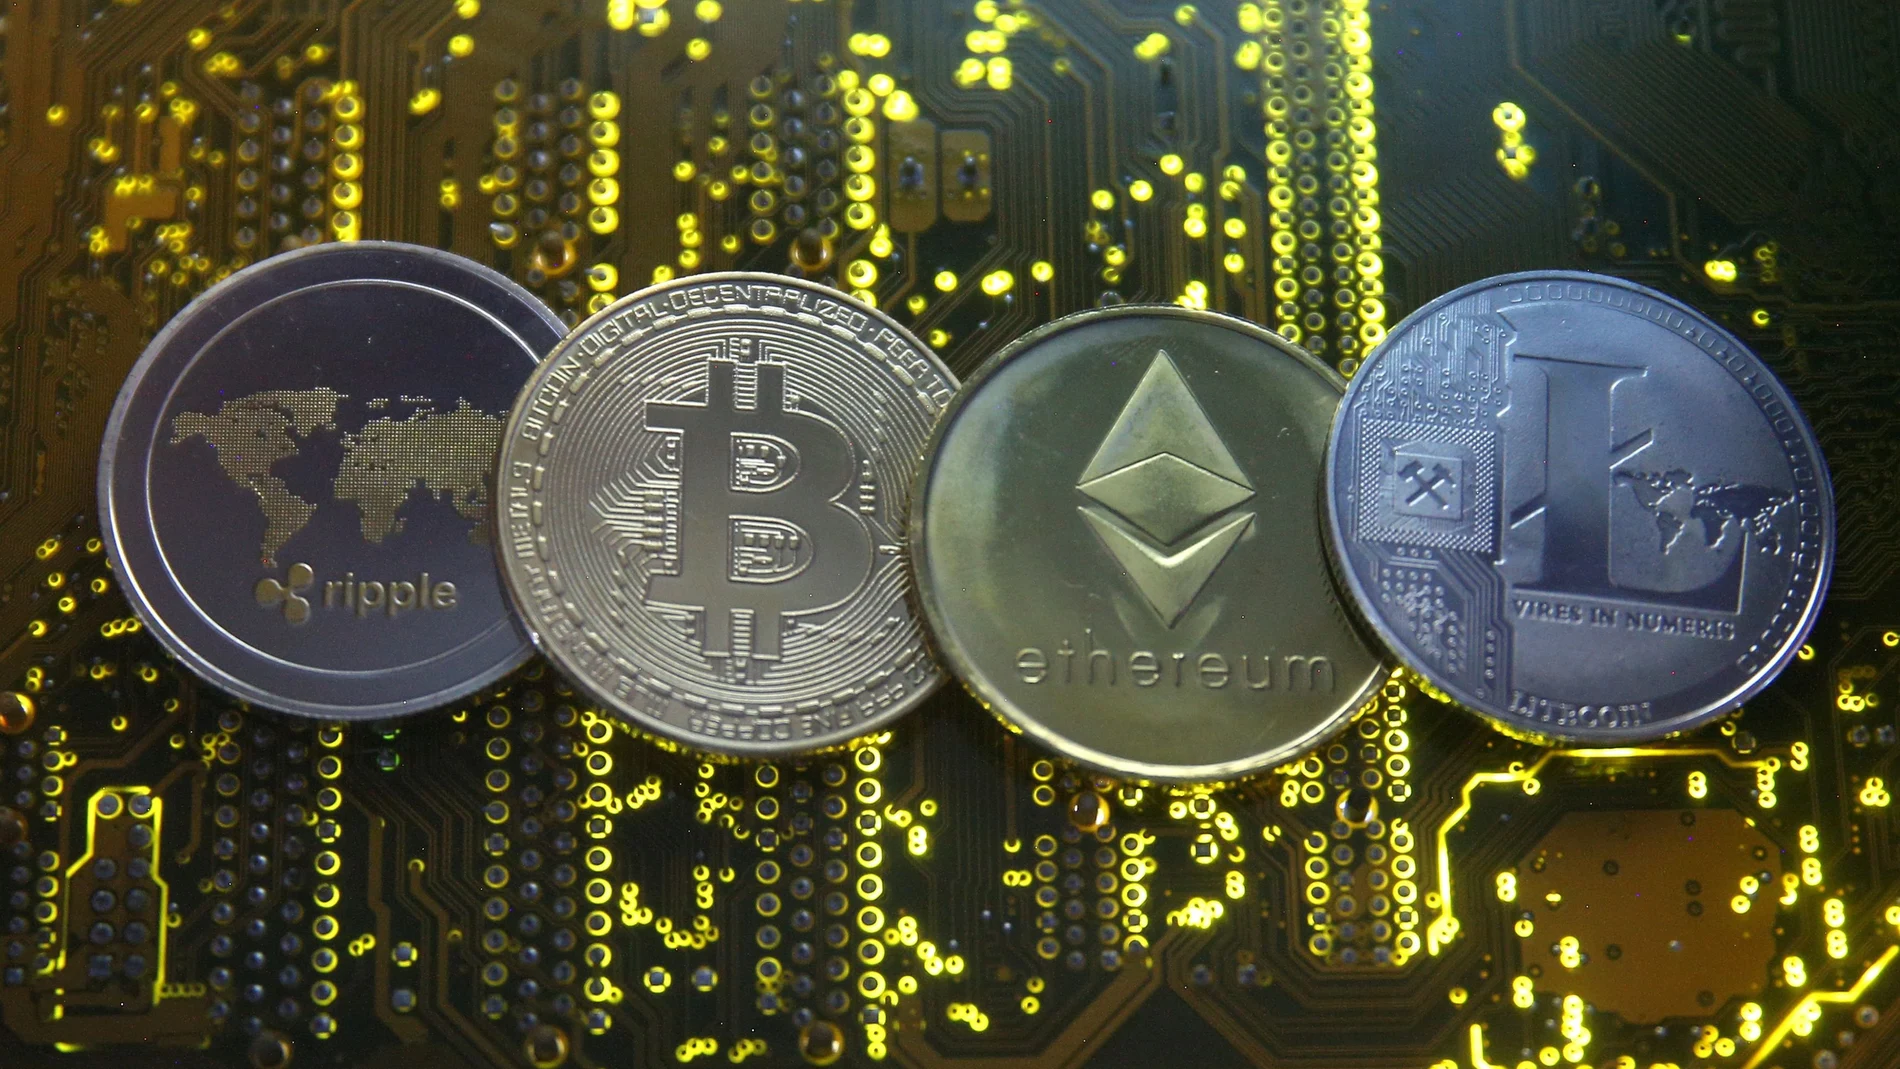 Representaciones de Ripple, Bitcoin, Ethereum y Litecoin, varias de las criptomonedas más importantes